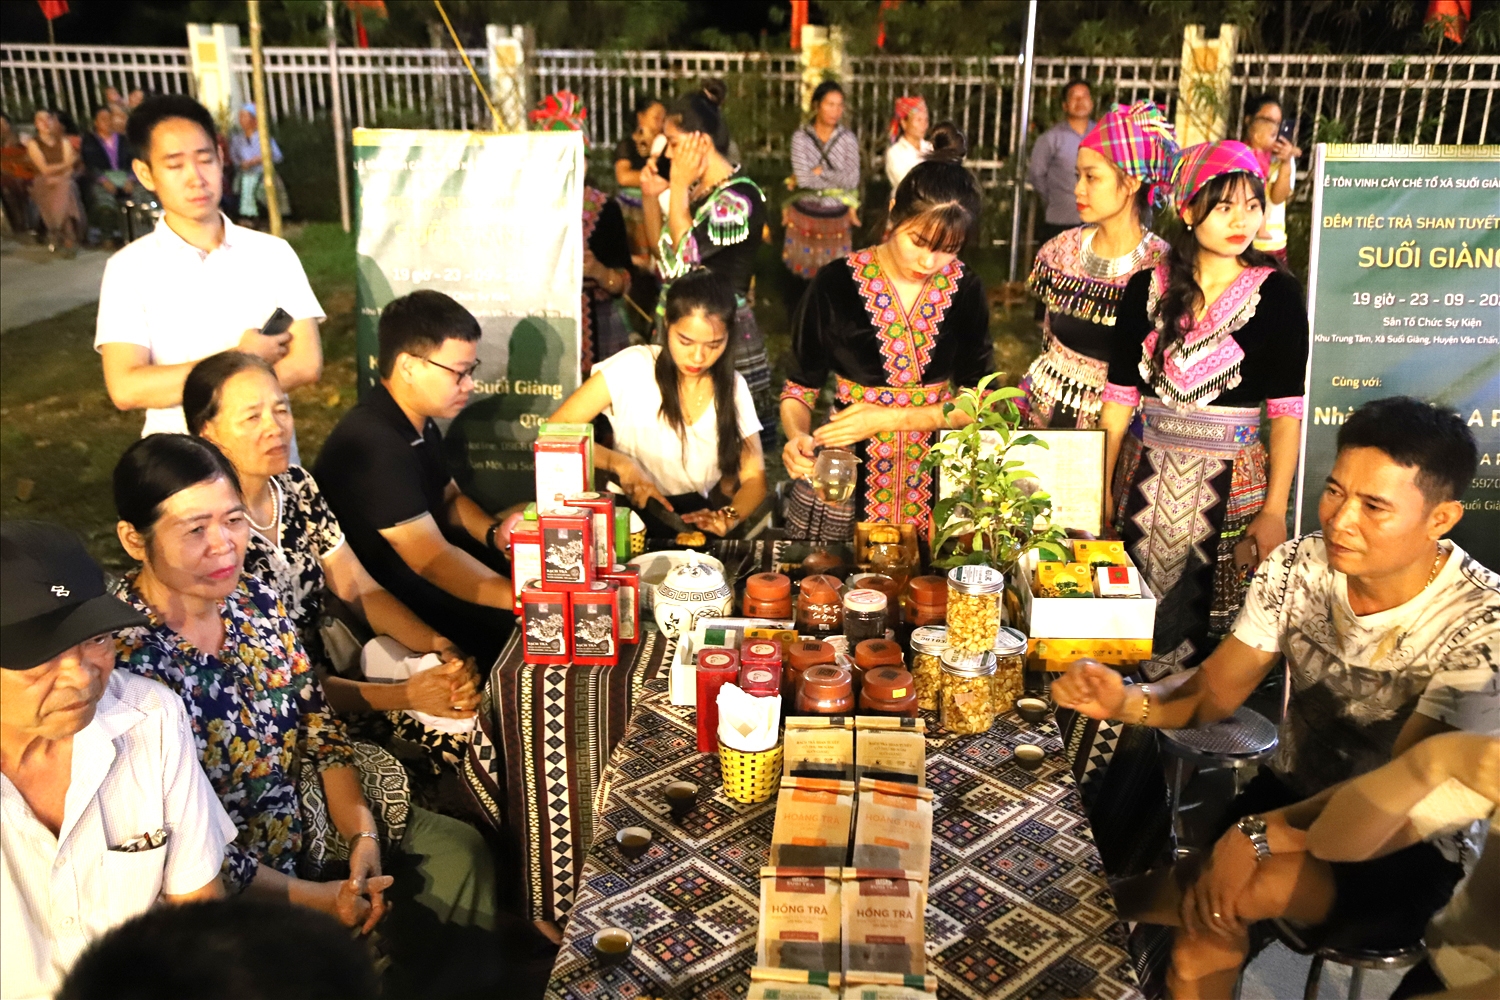 Nhân dân và du khách trong và ngoài tỉnh Yên Bái có dịp được ngồi lại để thưởng thức hương vị của trà Shan tuyết cổ thụ Suối Giàng.